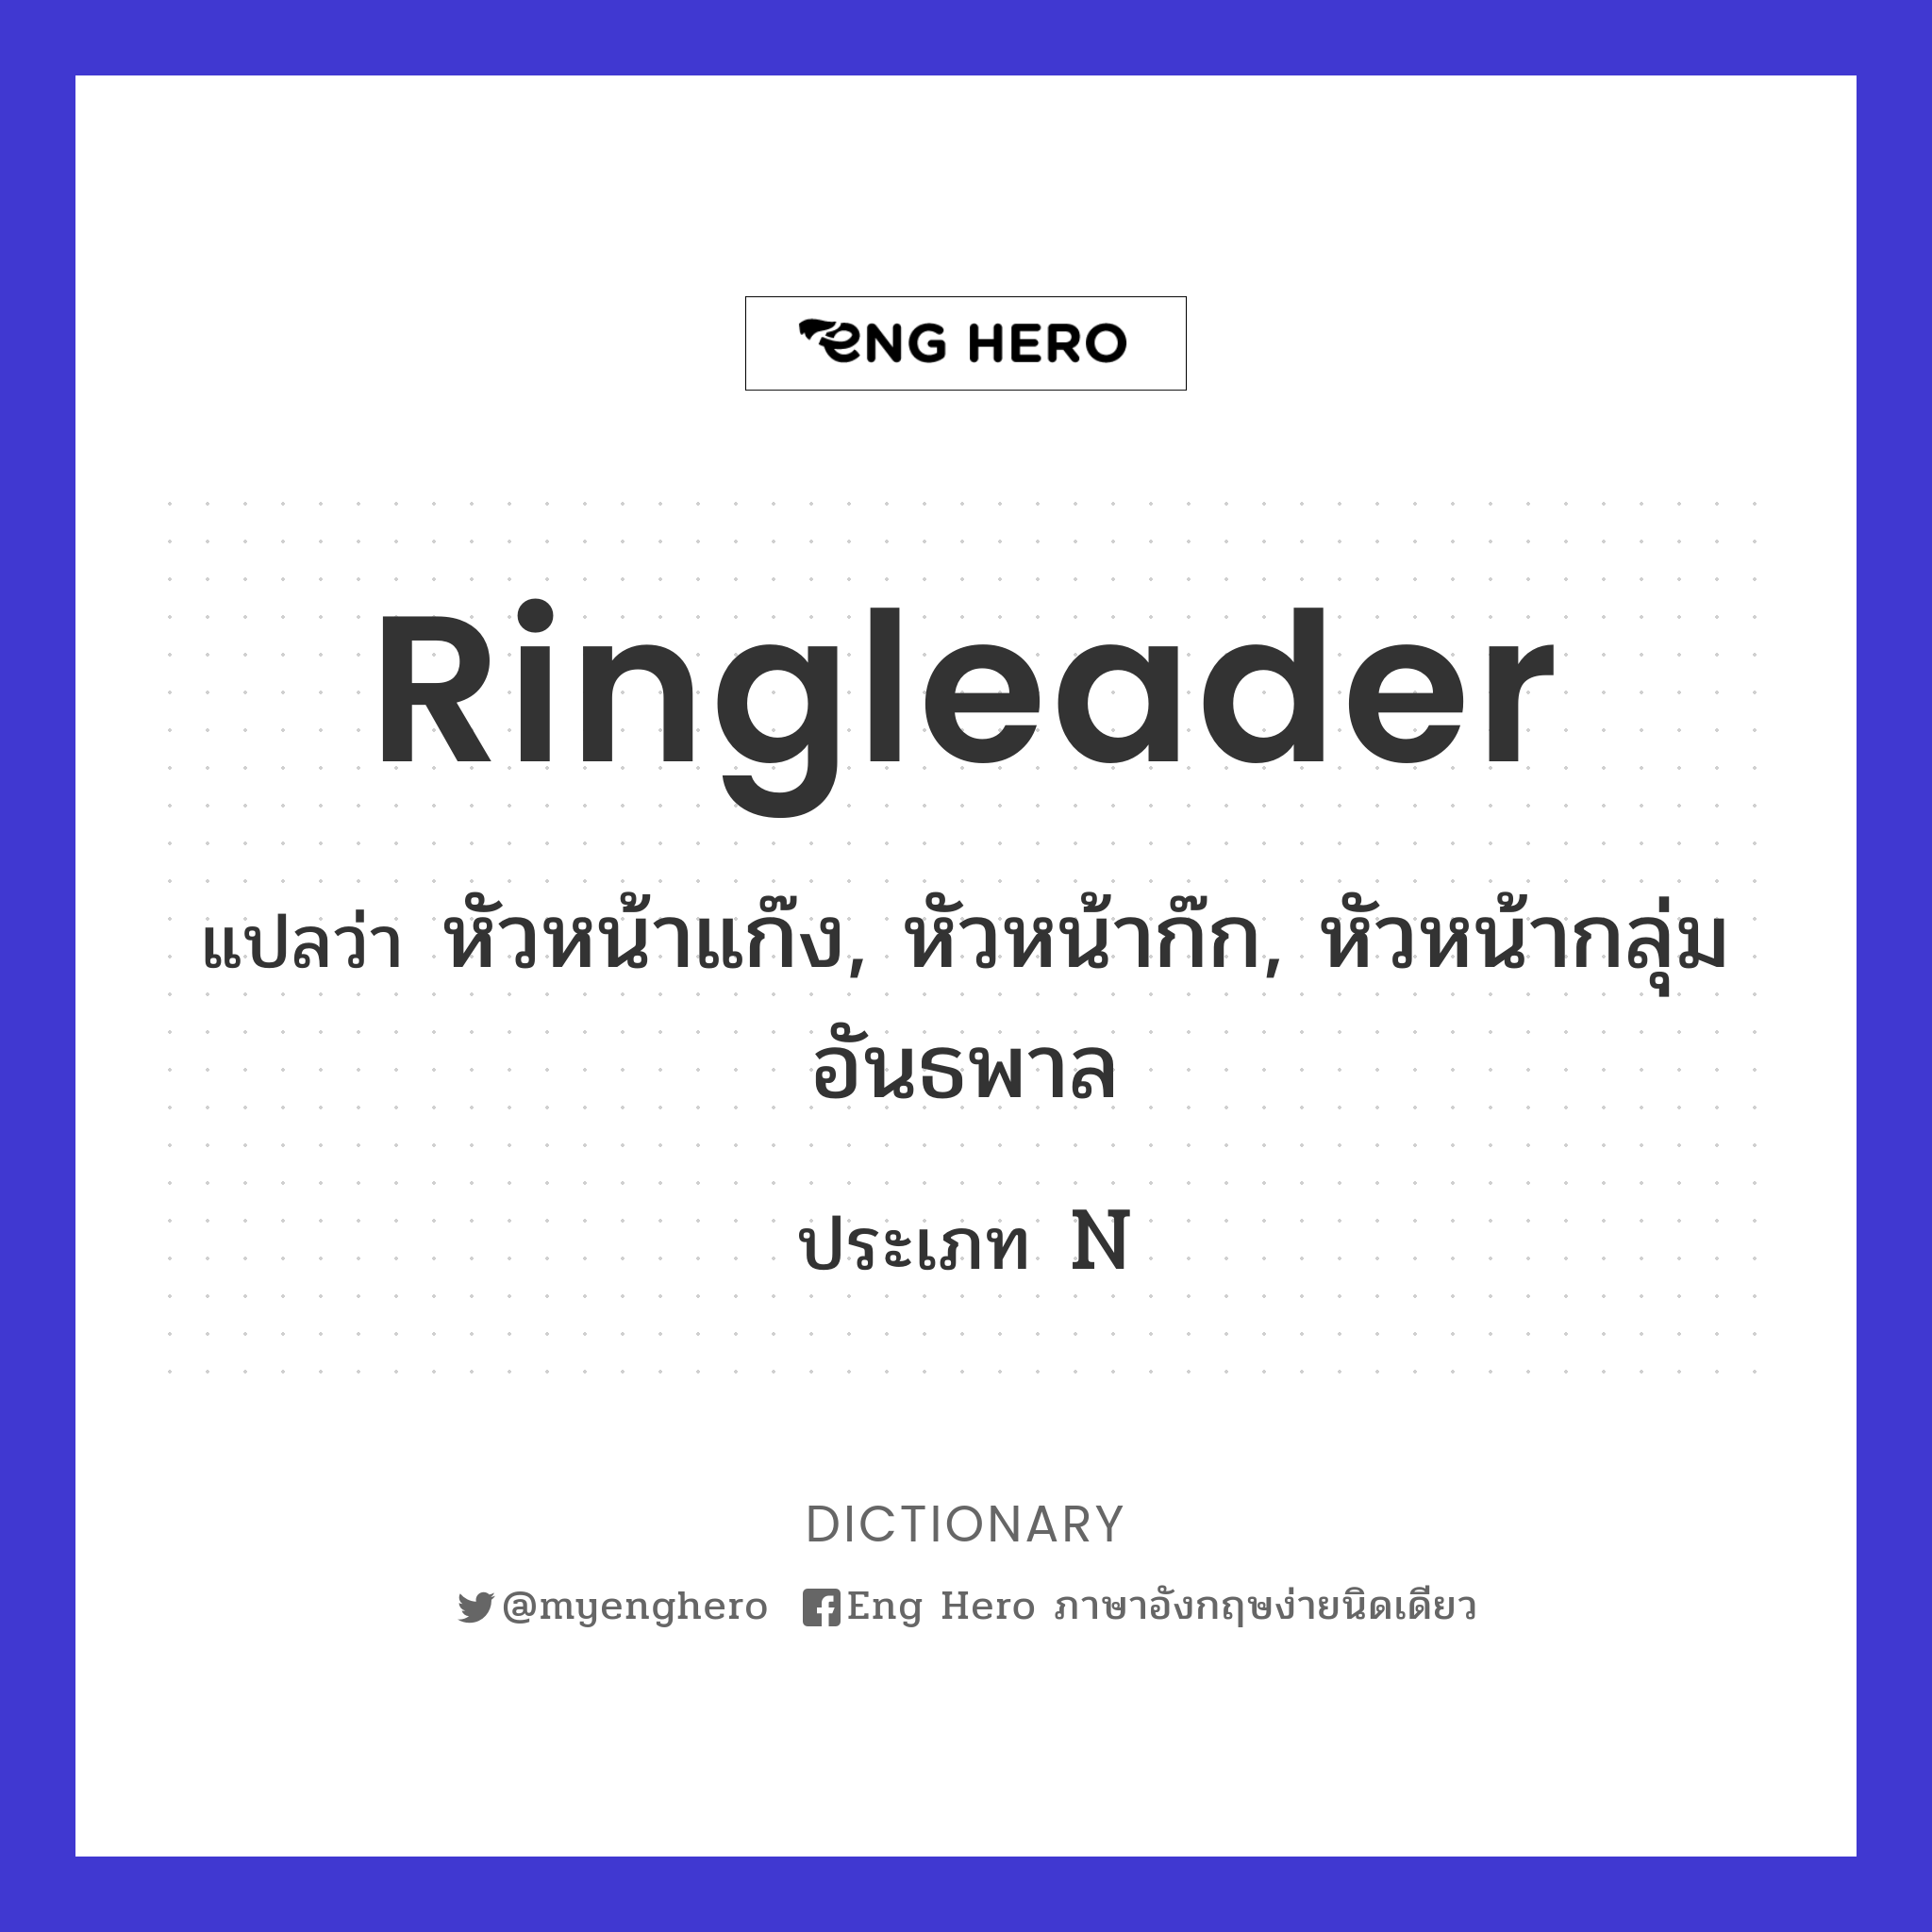 ringleader